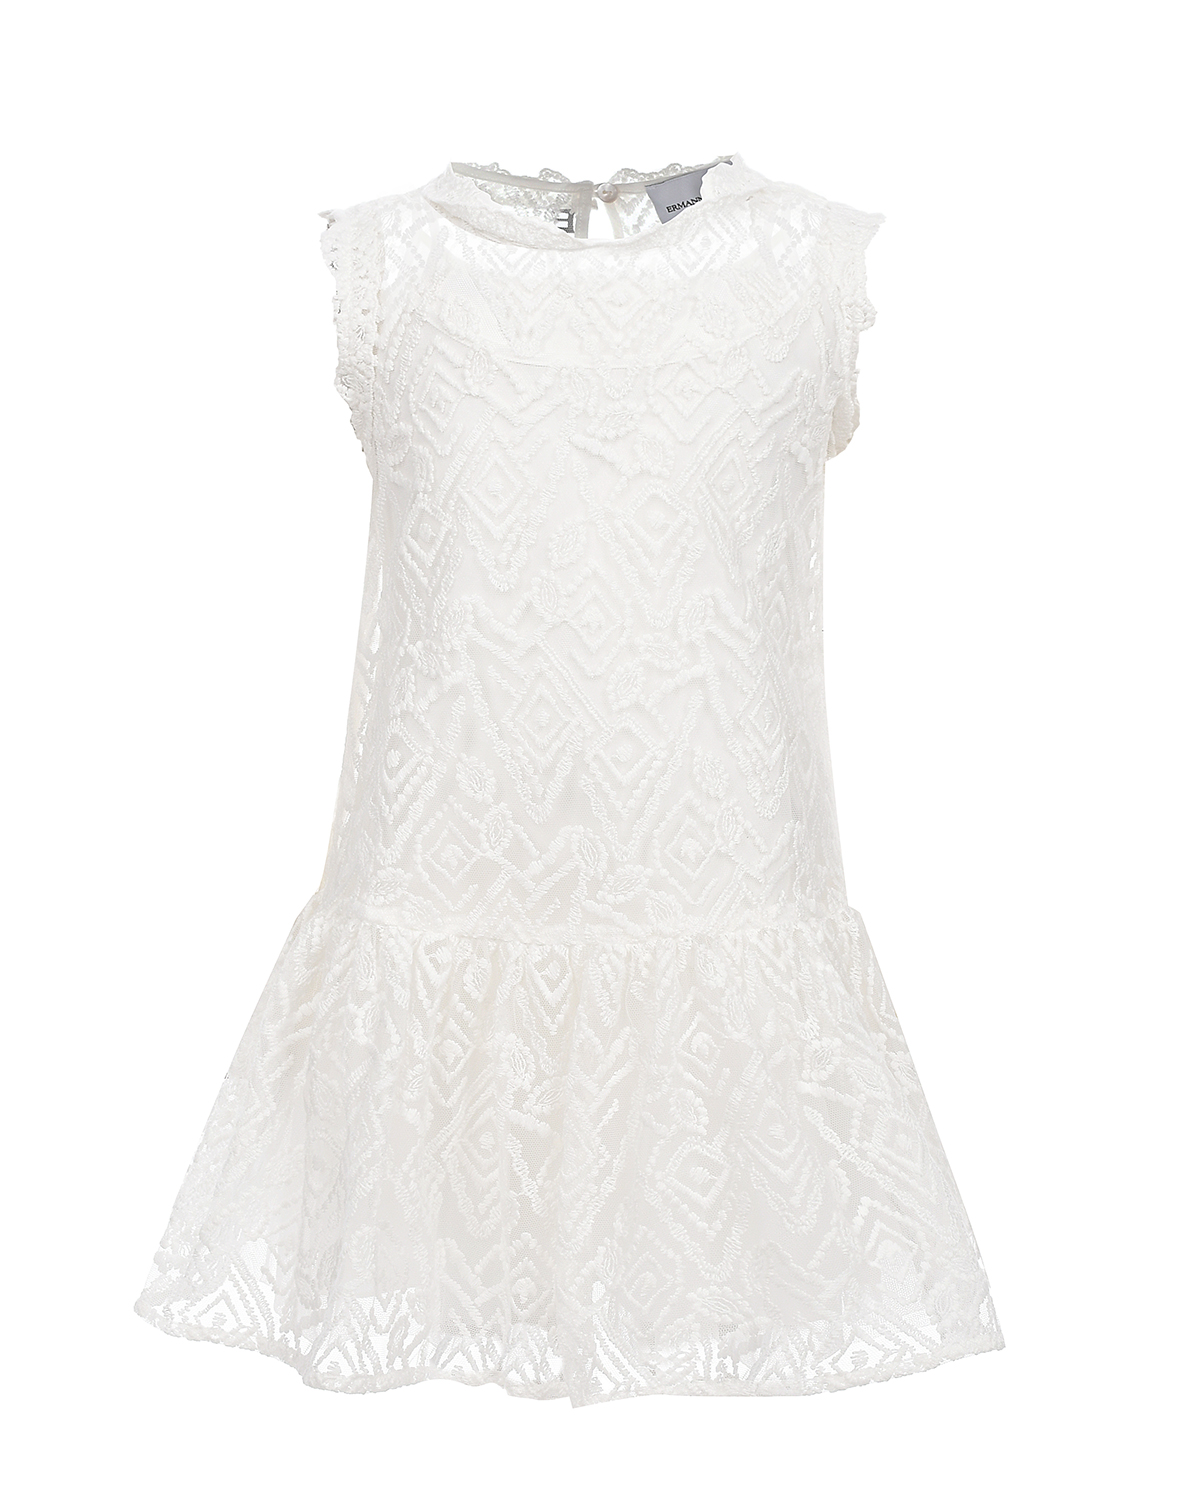 Белое платье с цветочной вышивкой Ermanno Scervino платье для животных клубничка xl дс 40 ог 50 см белое